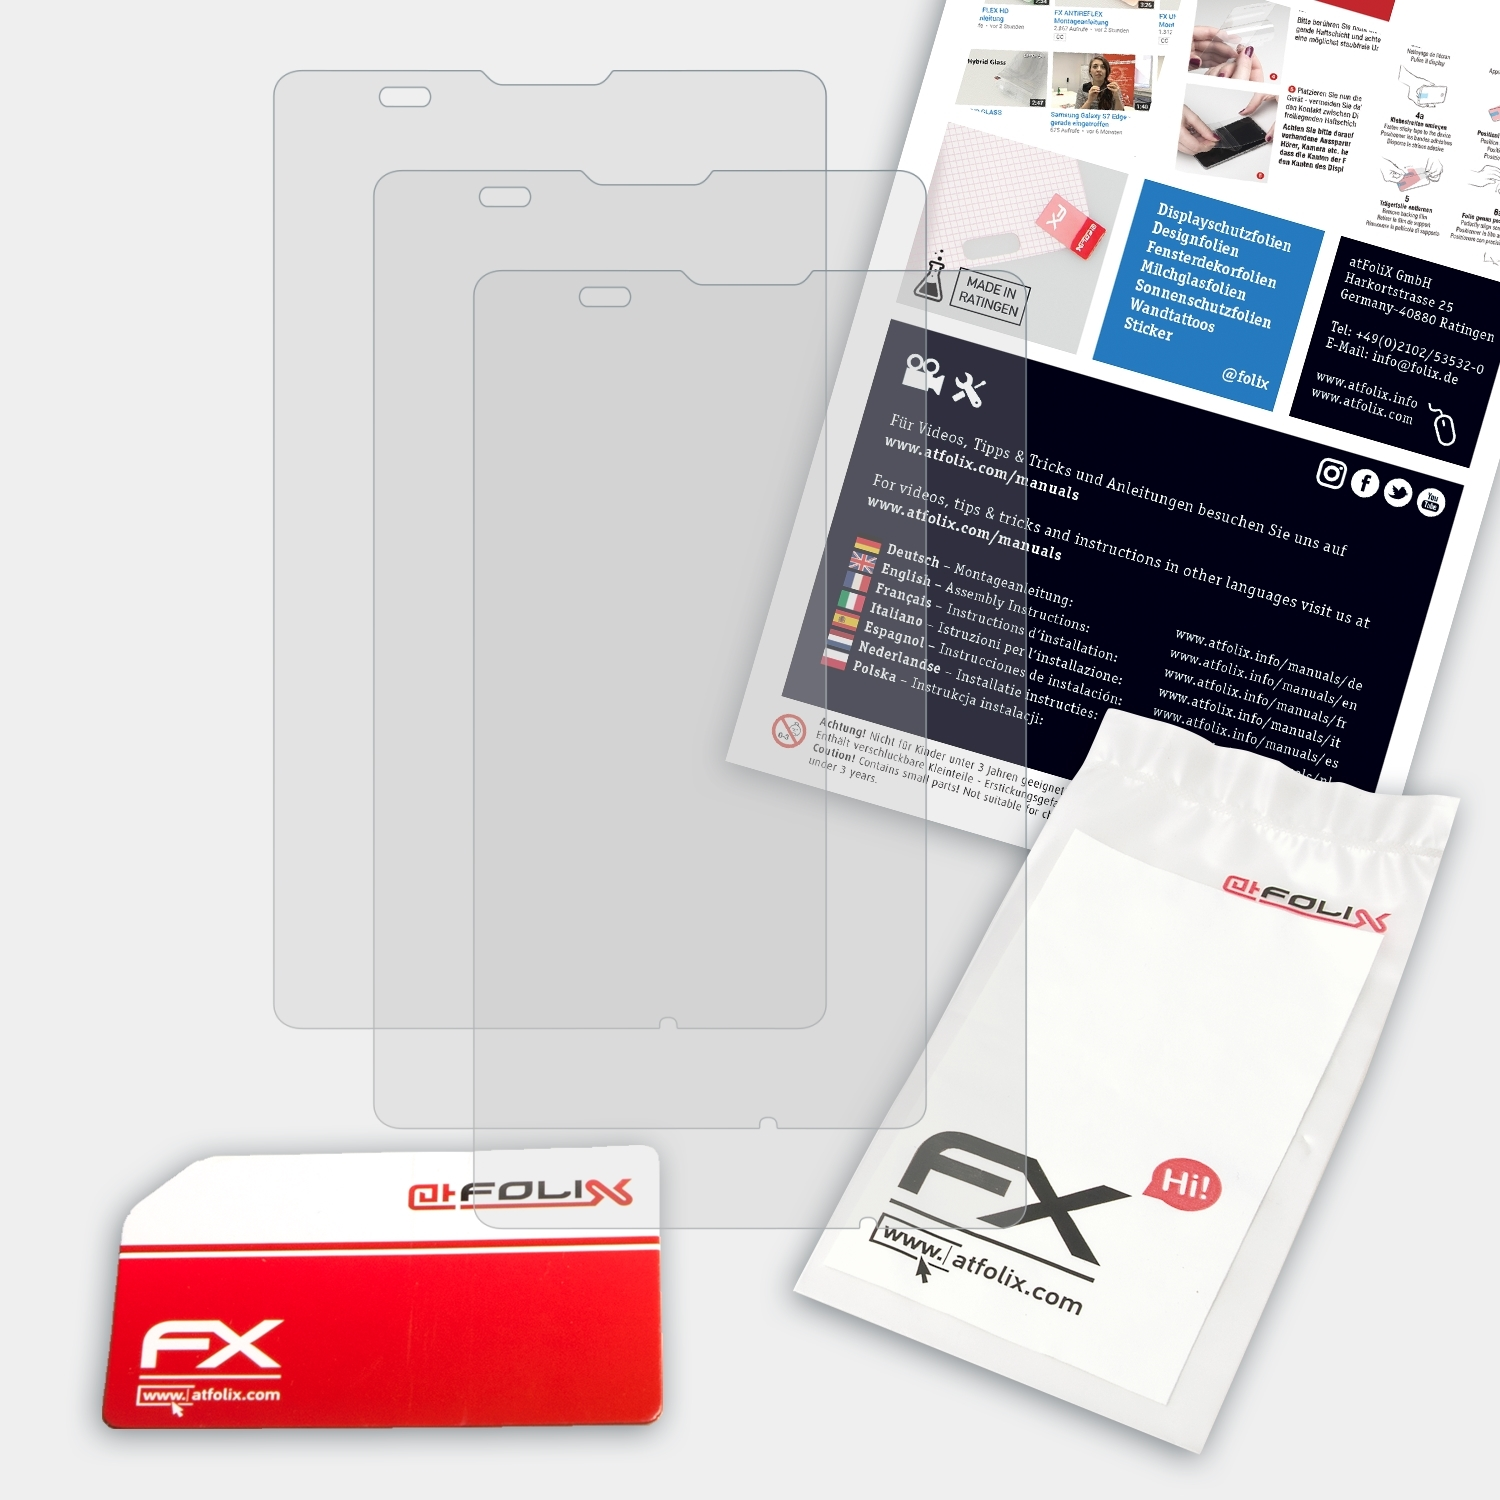 ATFOLIX Xperia 3x E FX-Antireflex Displayschutz(für E Sony Dual) /